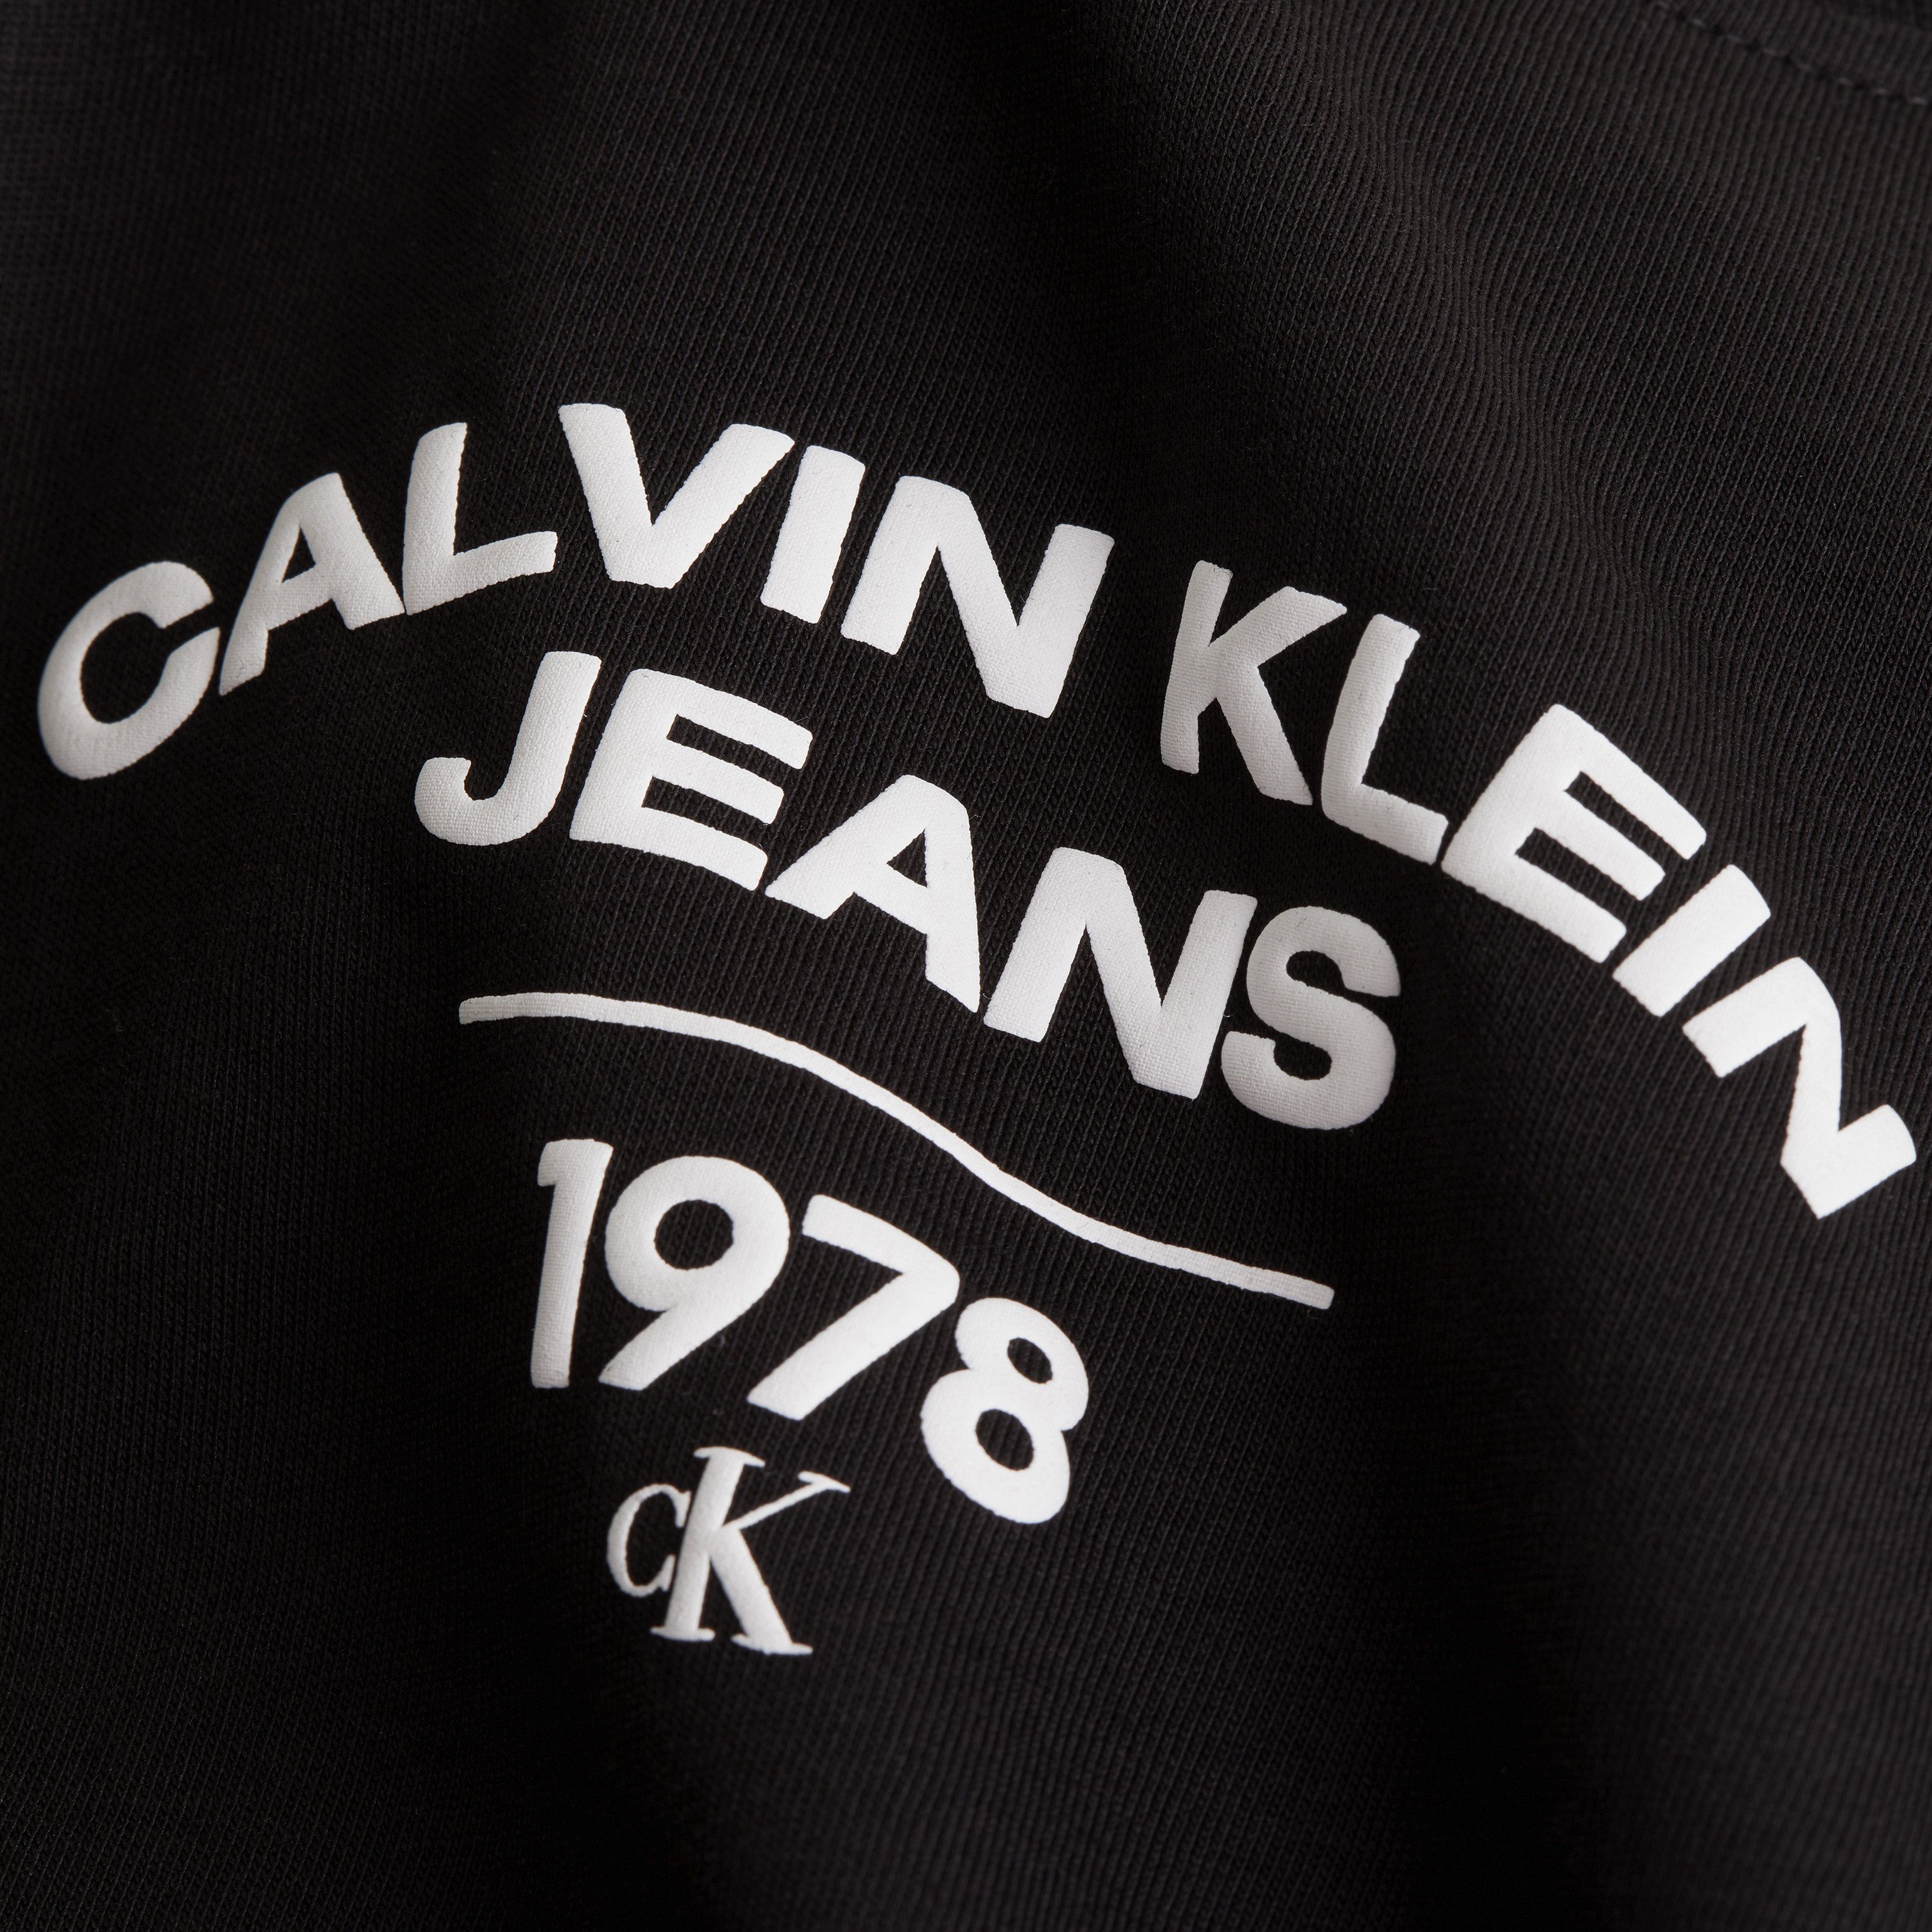 Calvin Klein Jeans Plus T-Shirt TEE VARISTY Black LOGO PLUS Ck REGULAR